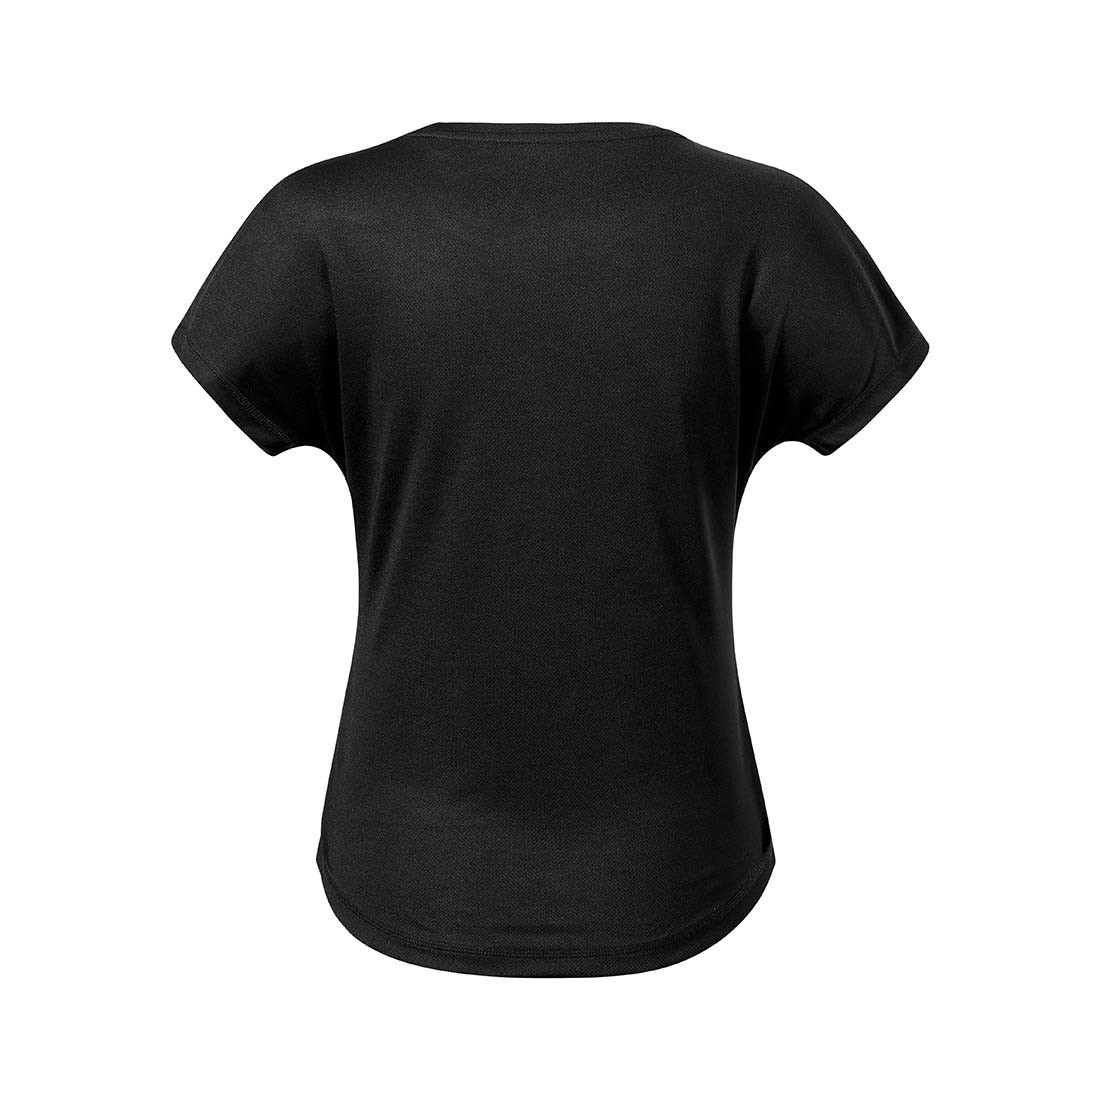 Tee-shirt CHANCE pour femmes - Les vêtements de protection